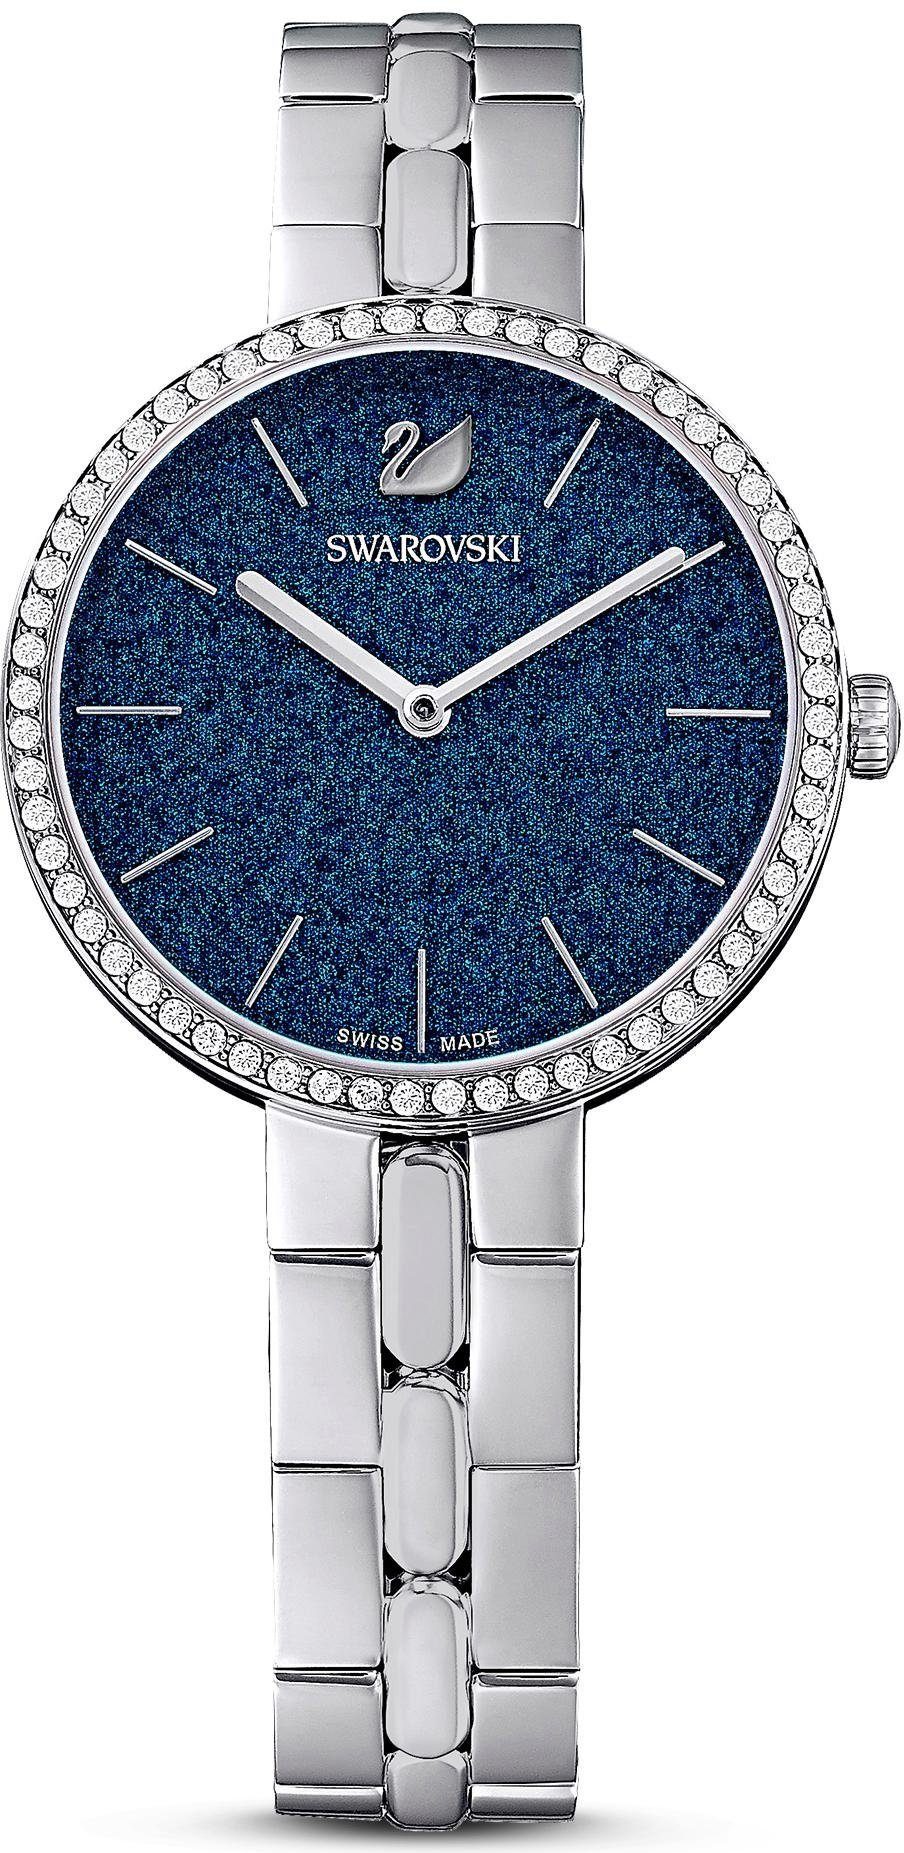 Swarovski Schweizer Uhr COSMOPOLITAN, 5517790, Zifferblatt mit Glitzerlack silber